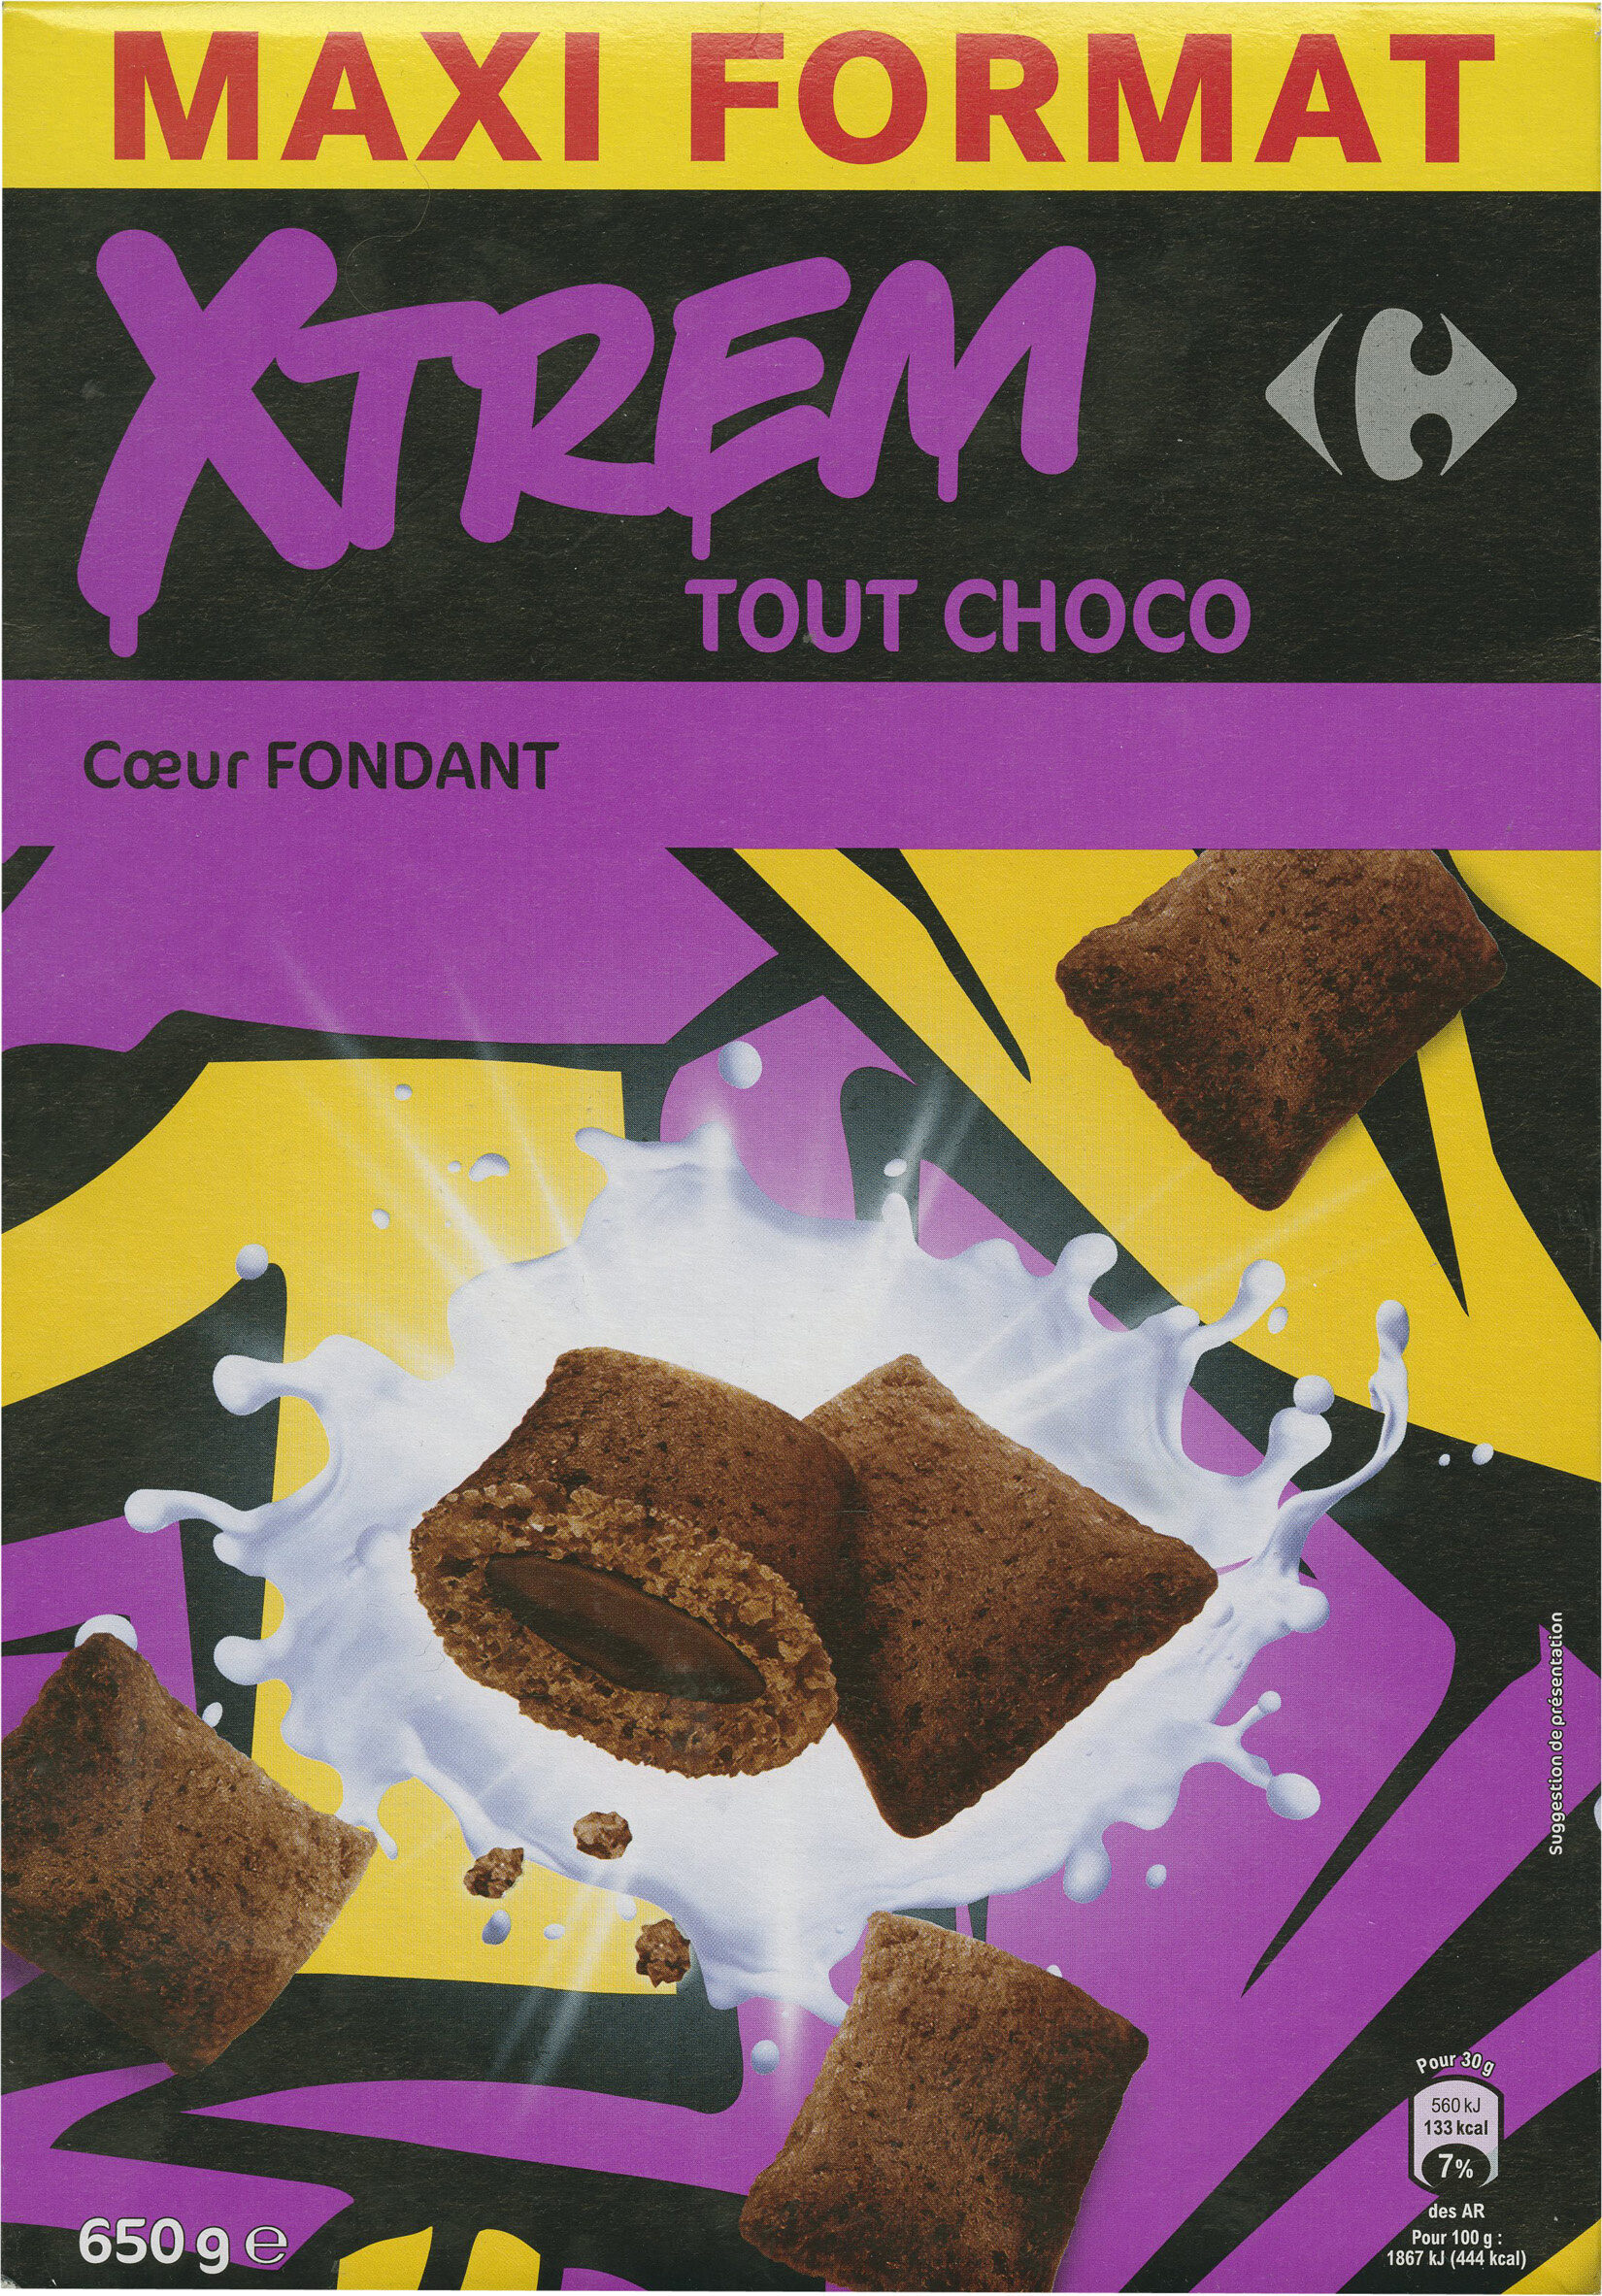 Crocks choco - Product - fr